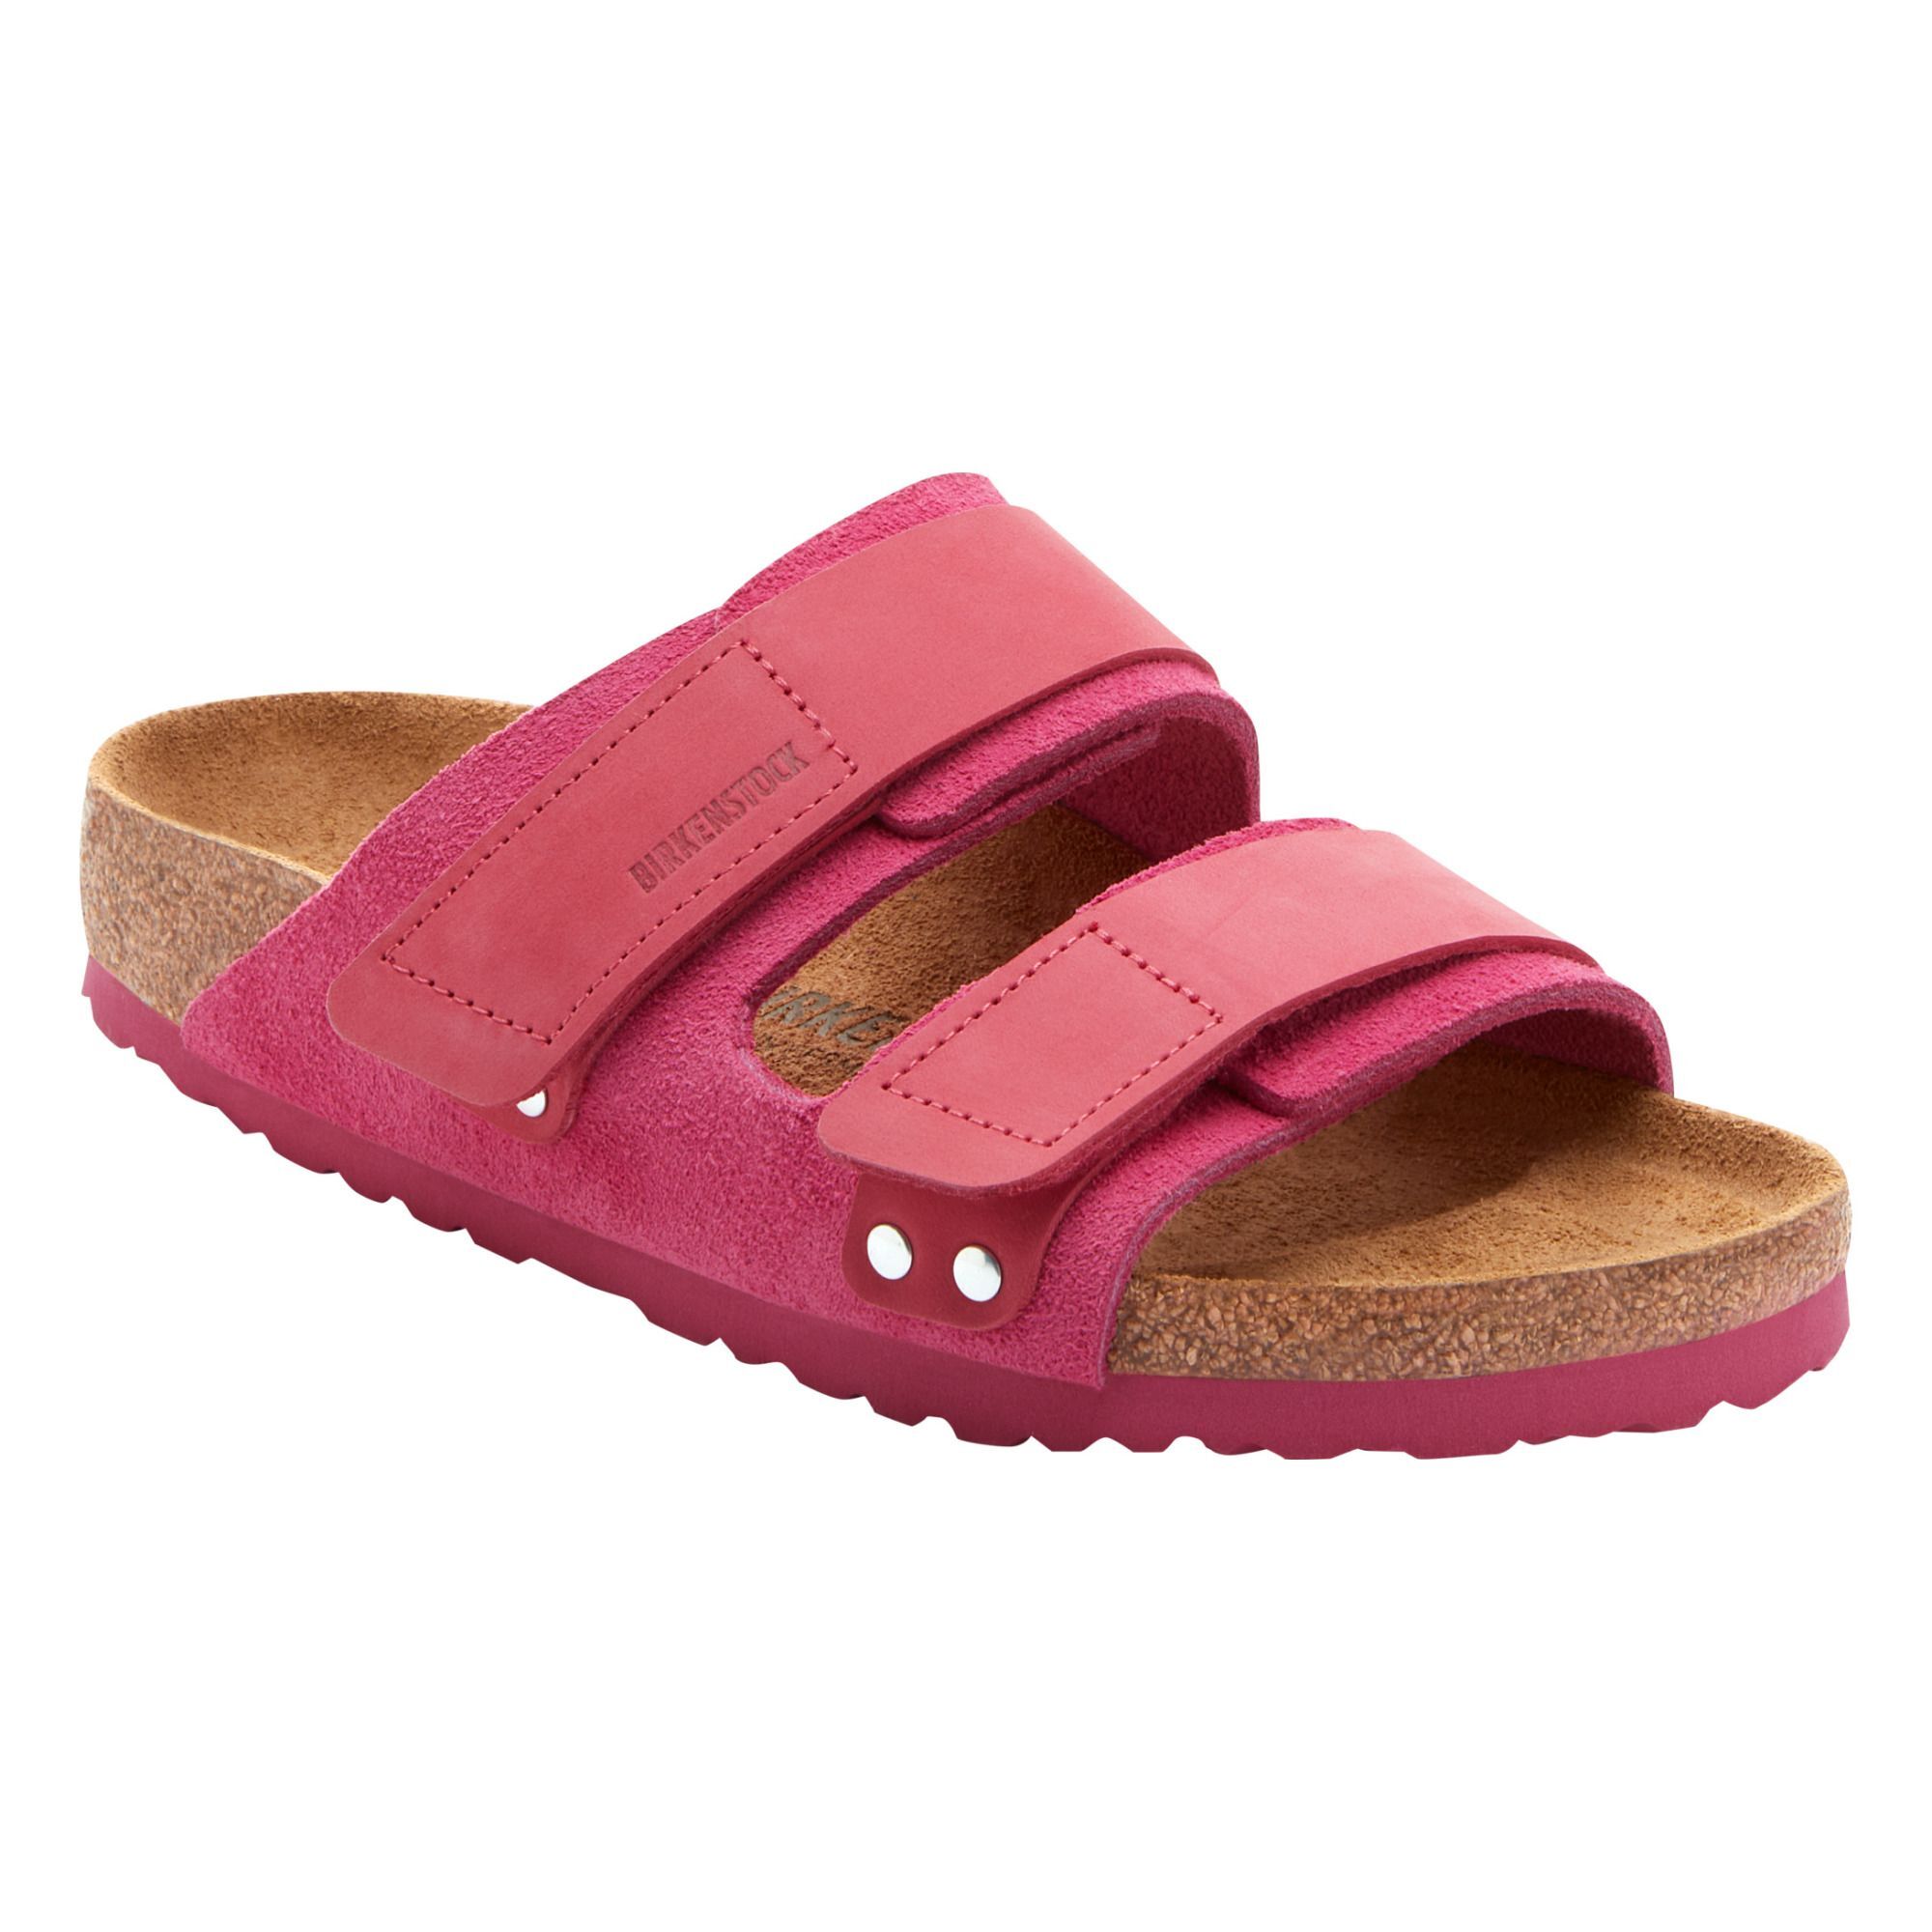 BIRKENSTOCK Uji Sandals Narrow Shoe Fuchsia 36EU Women